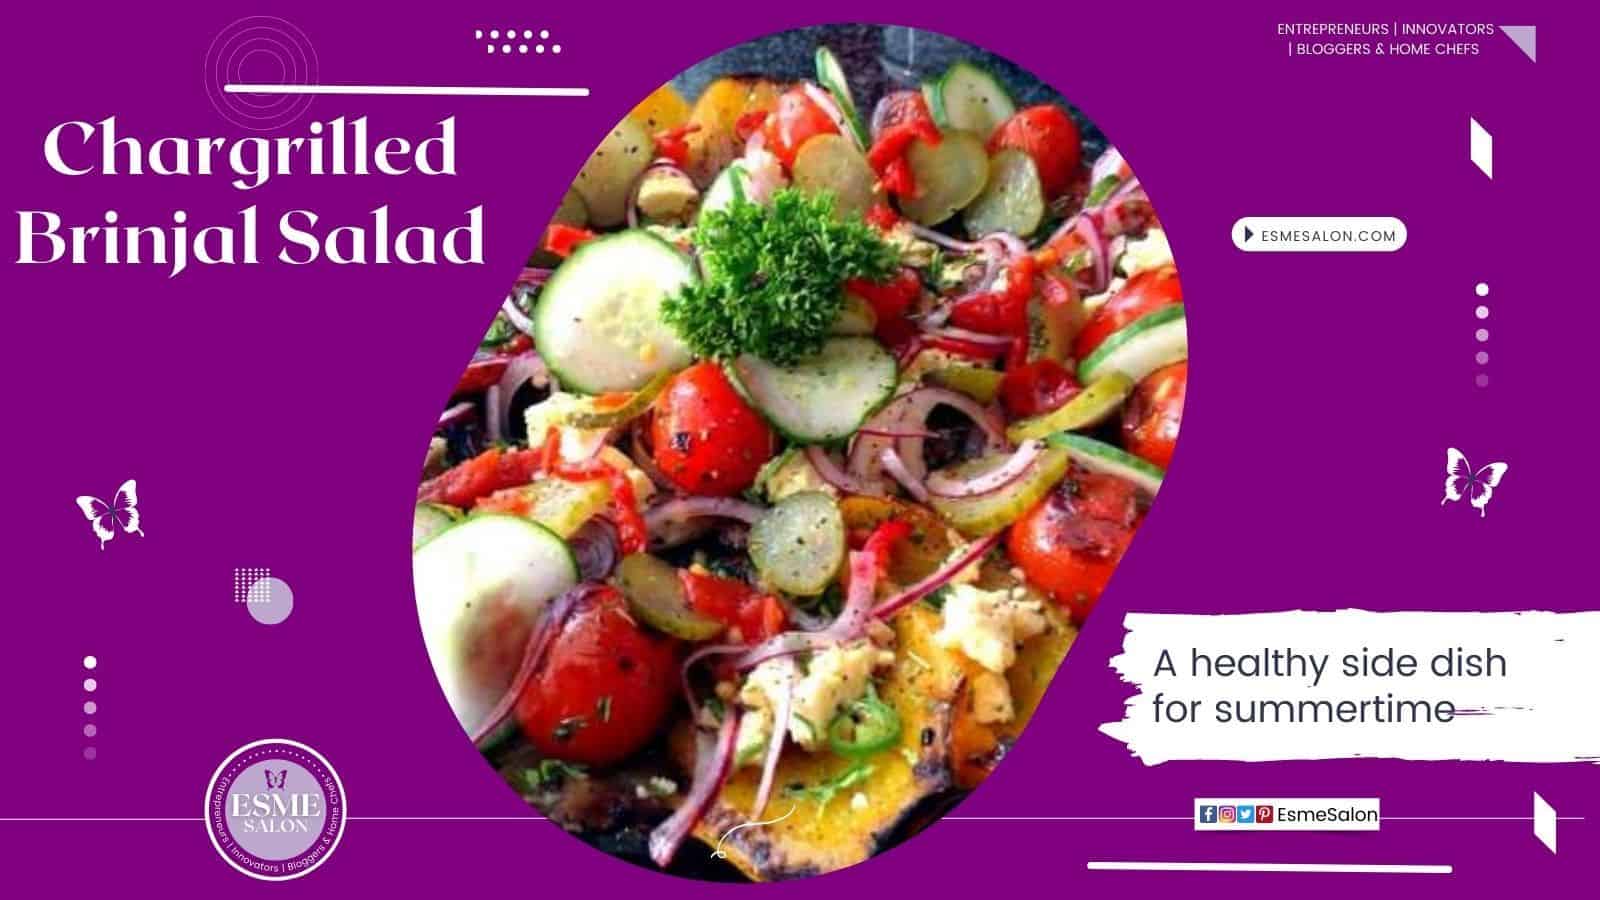 Chargrilled Brinjal Salad